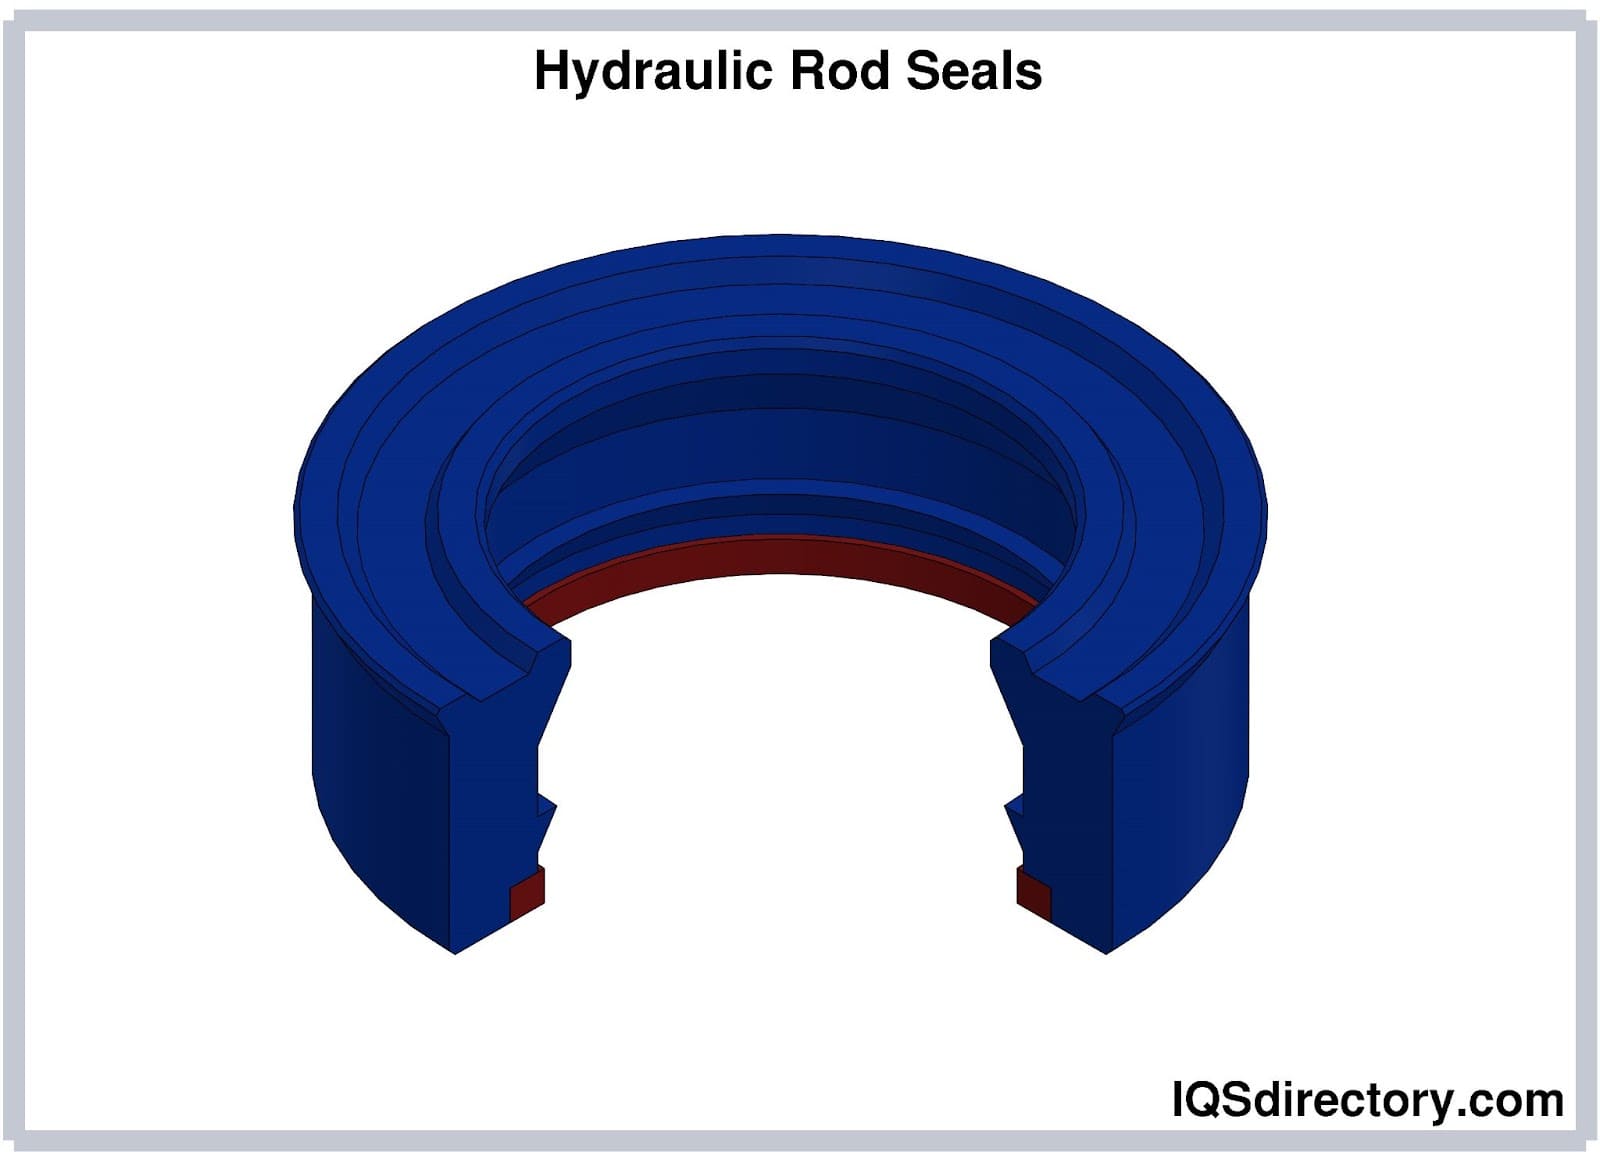 Hydraulic Rod Seals